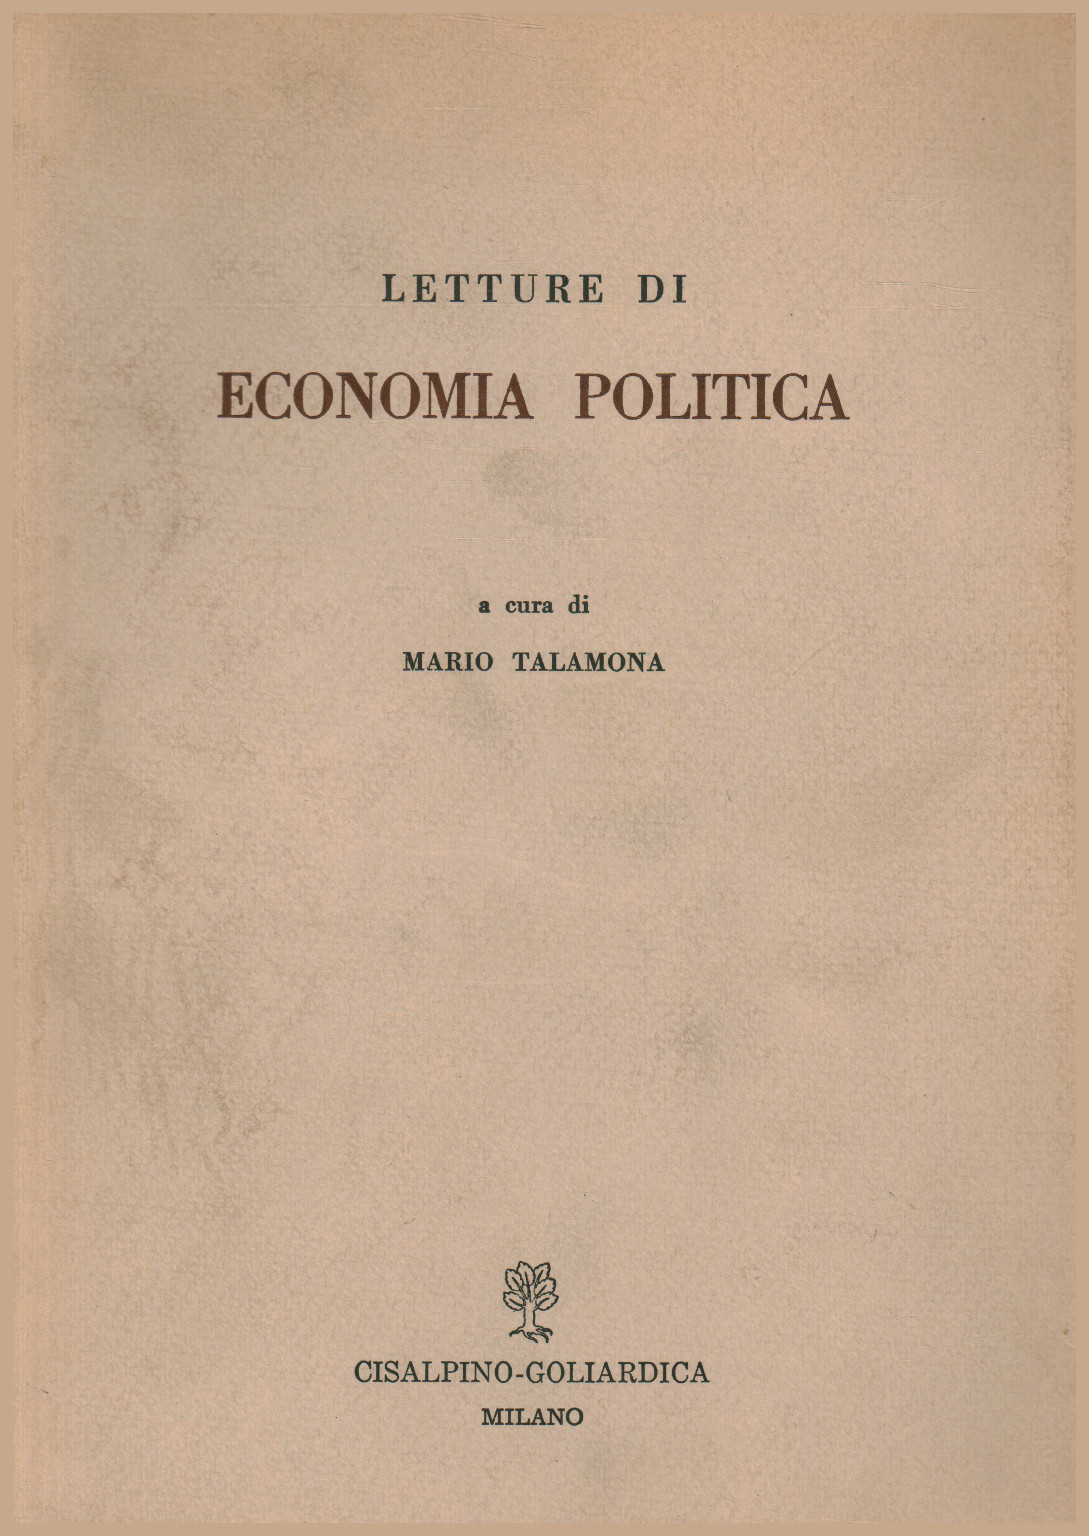 Letture di economia politica, s.a.